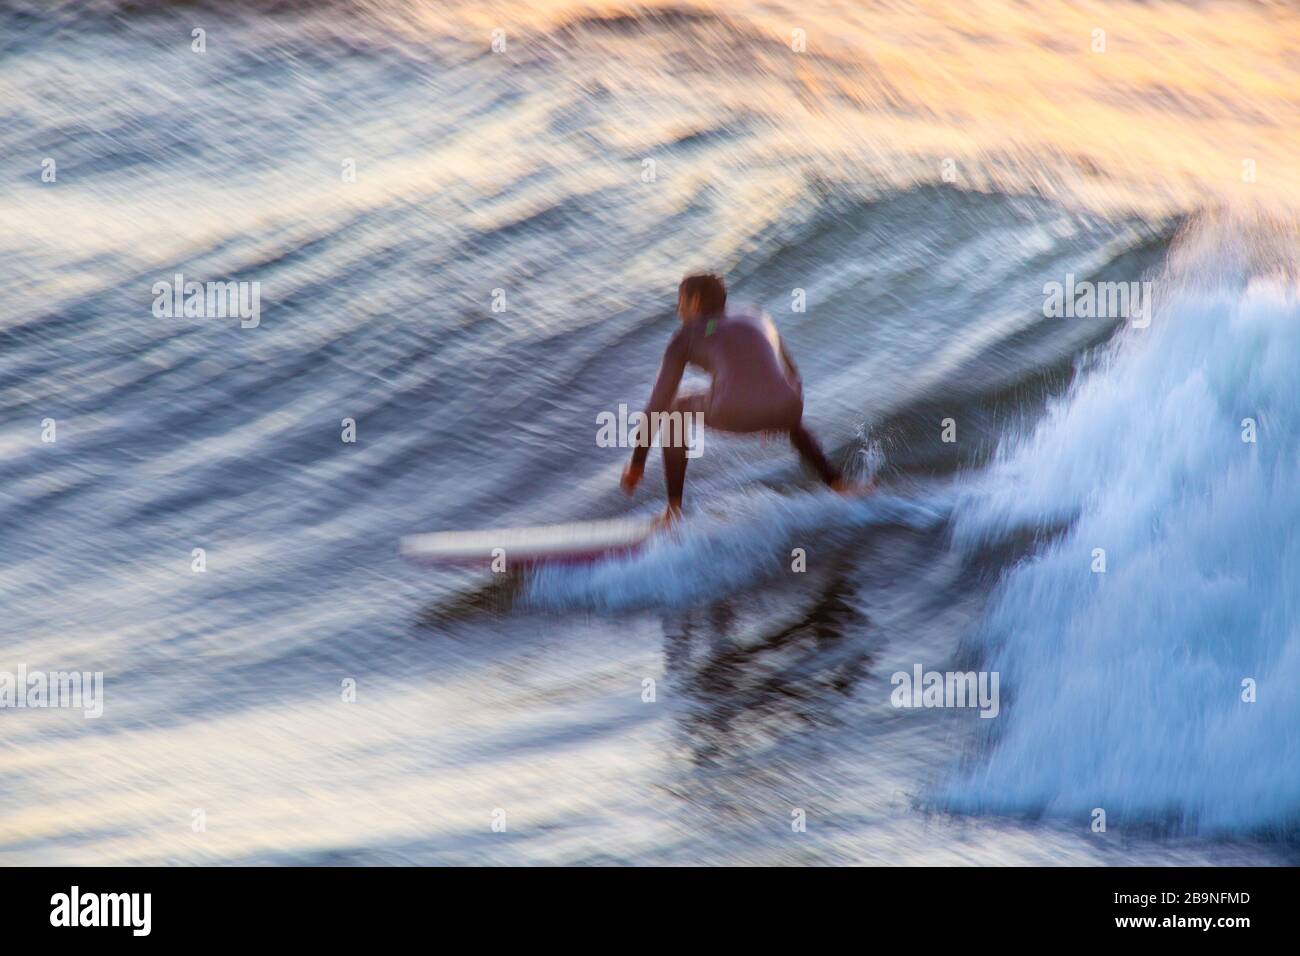 Imagen de desenfoque de movimiento del surf en Leadbetter Point al amanecer, Santa Bárbara, California Foto de stock